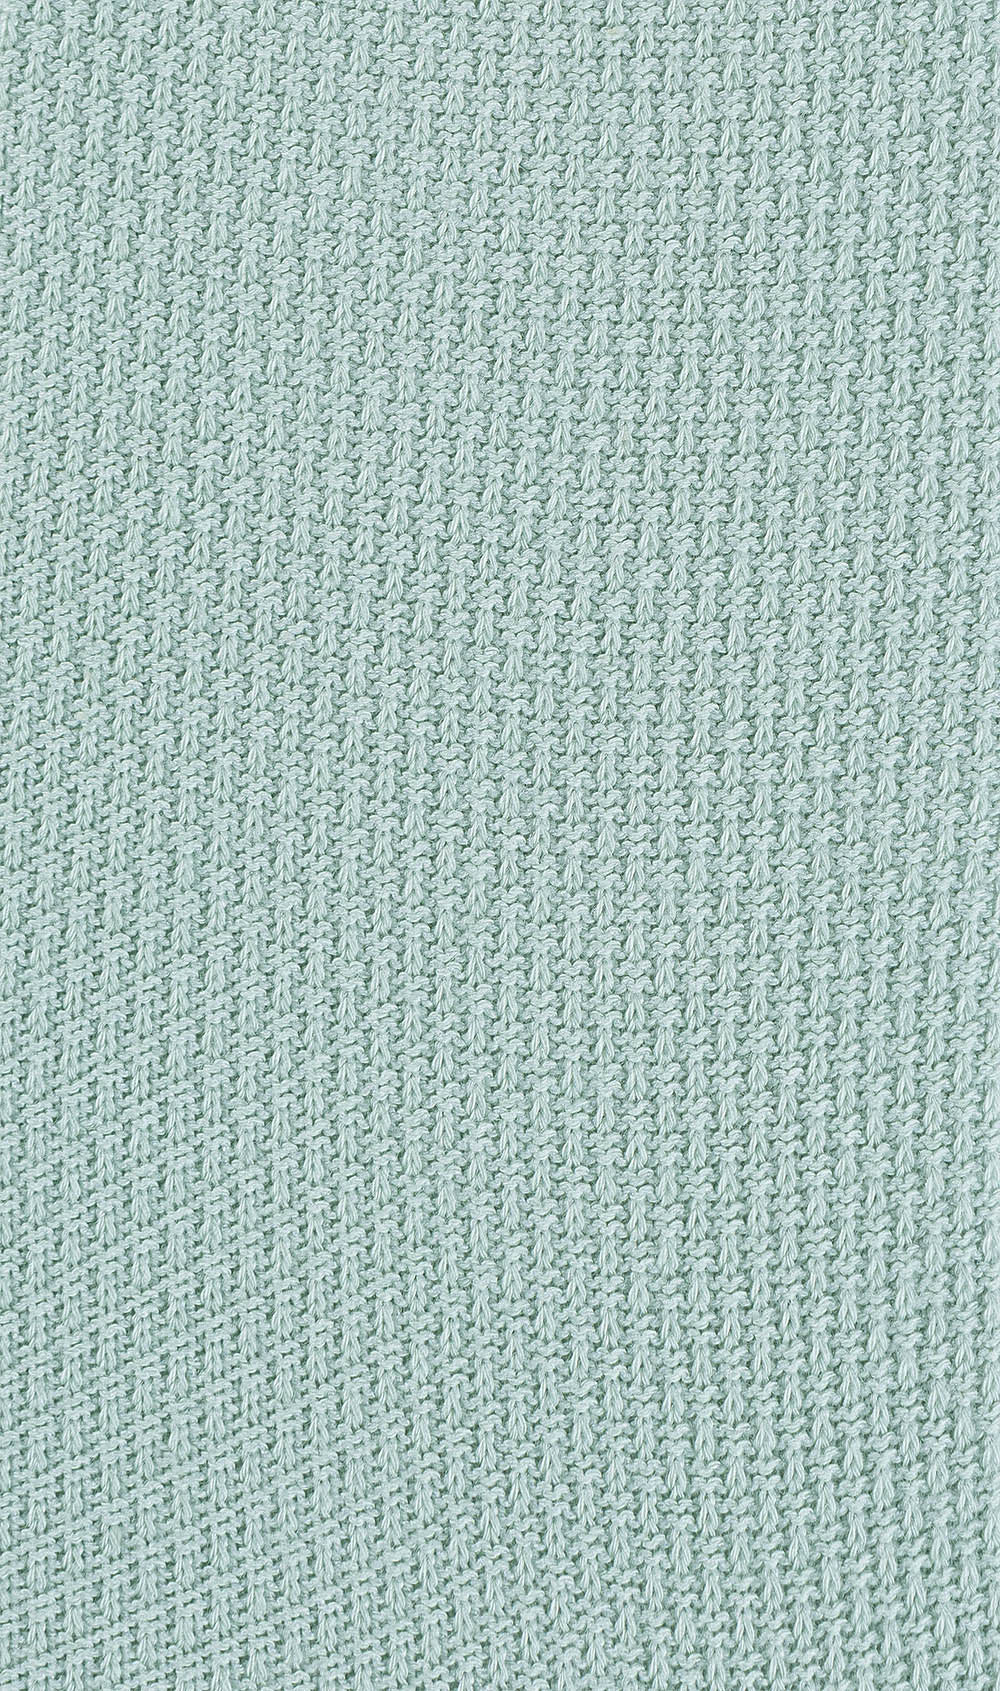 Mint Green Textured Socks Pattern